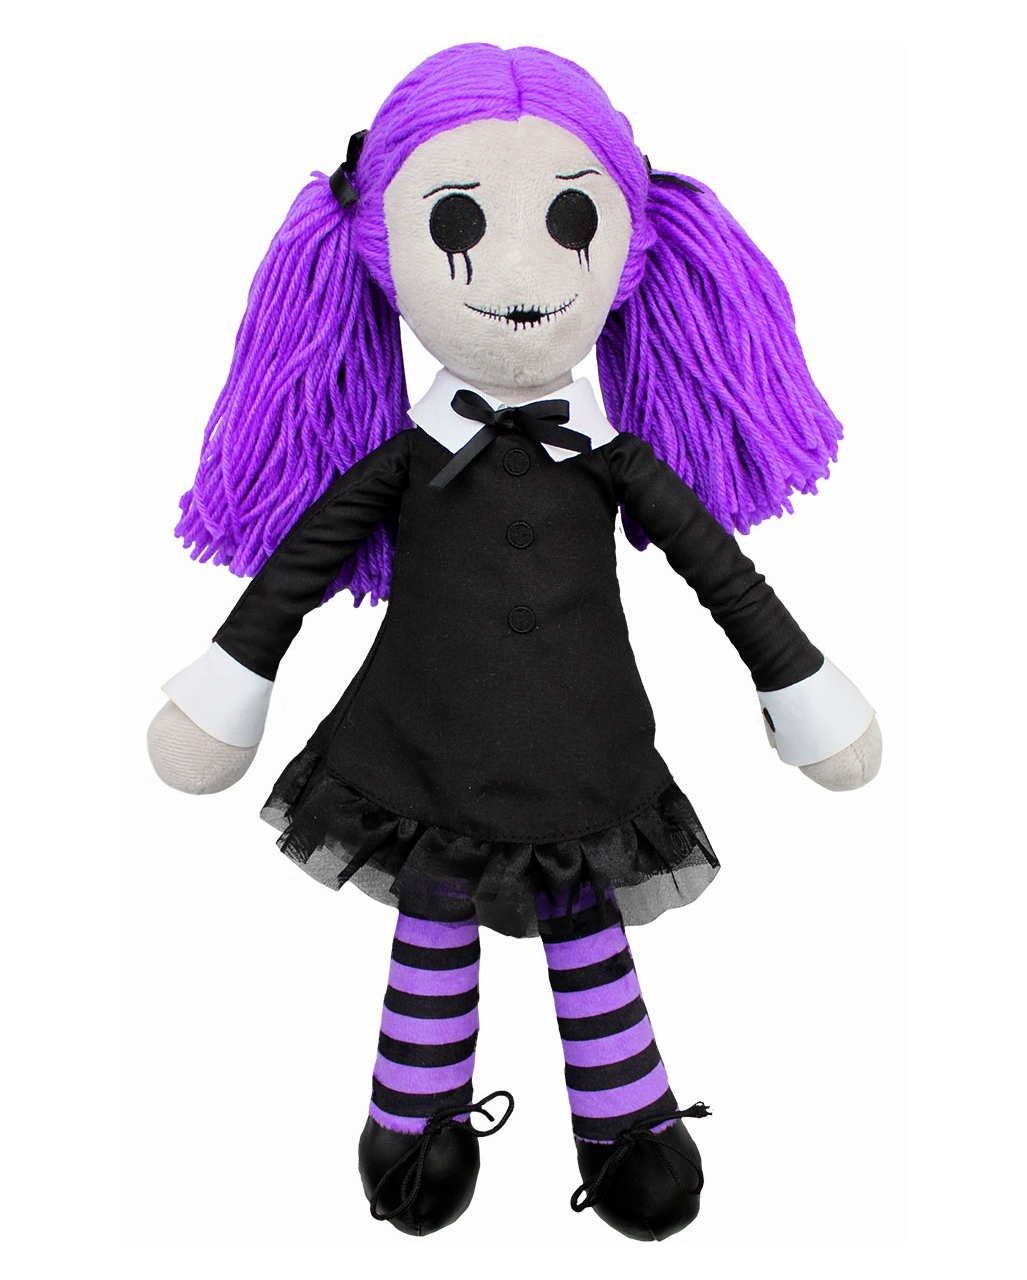 Viola - The Gothic Rag Doll Plüschpuppe 39cm ★★ von Horror-Shop.com